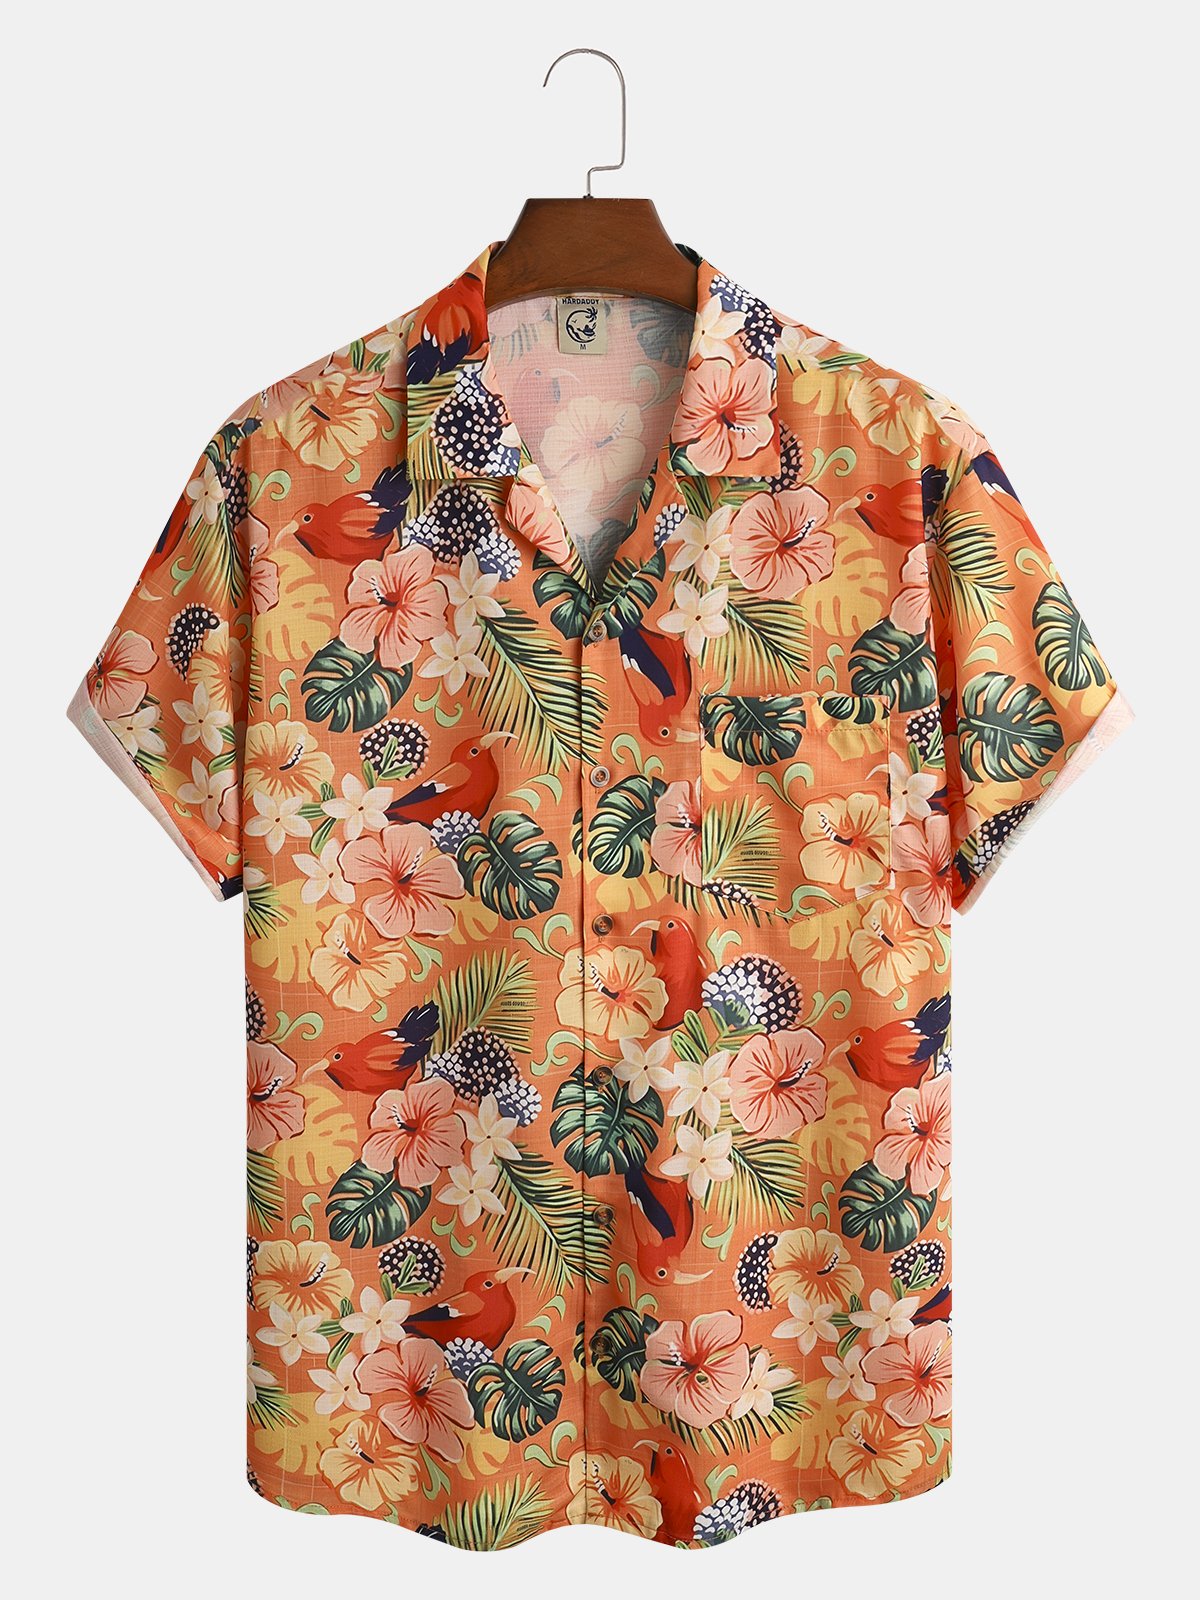 Floral Chest Pocket Short Sleeve Resort Shirt